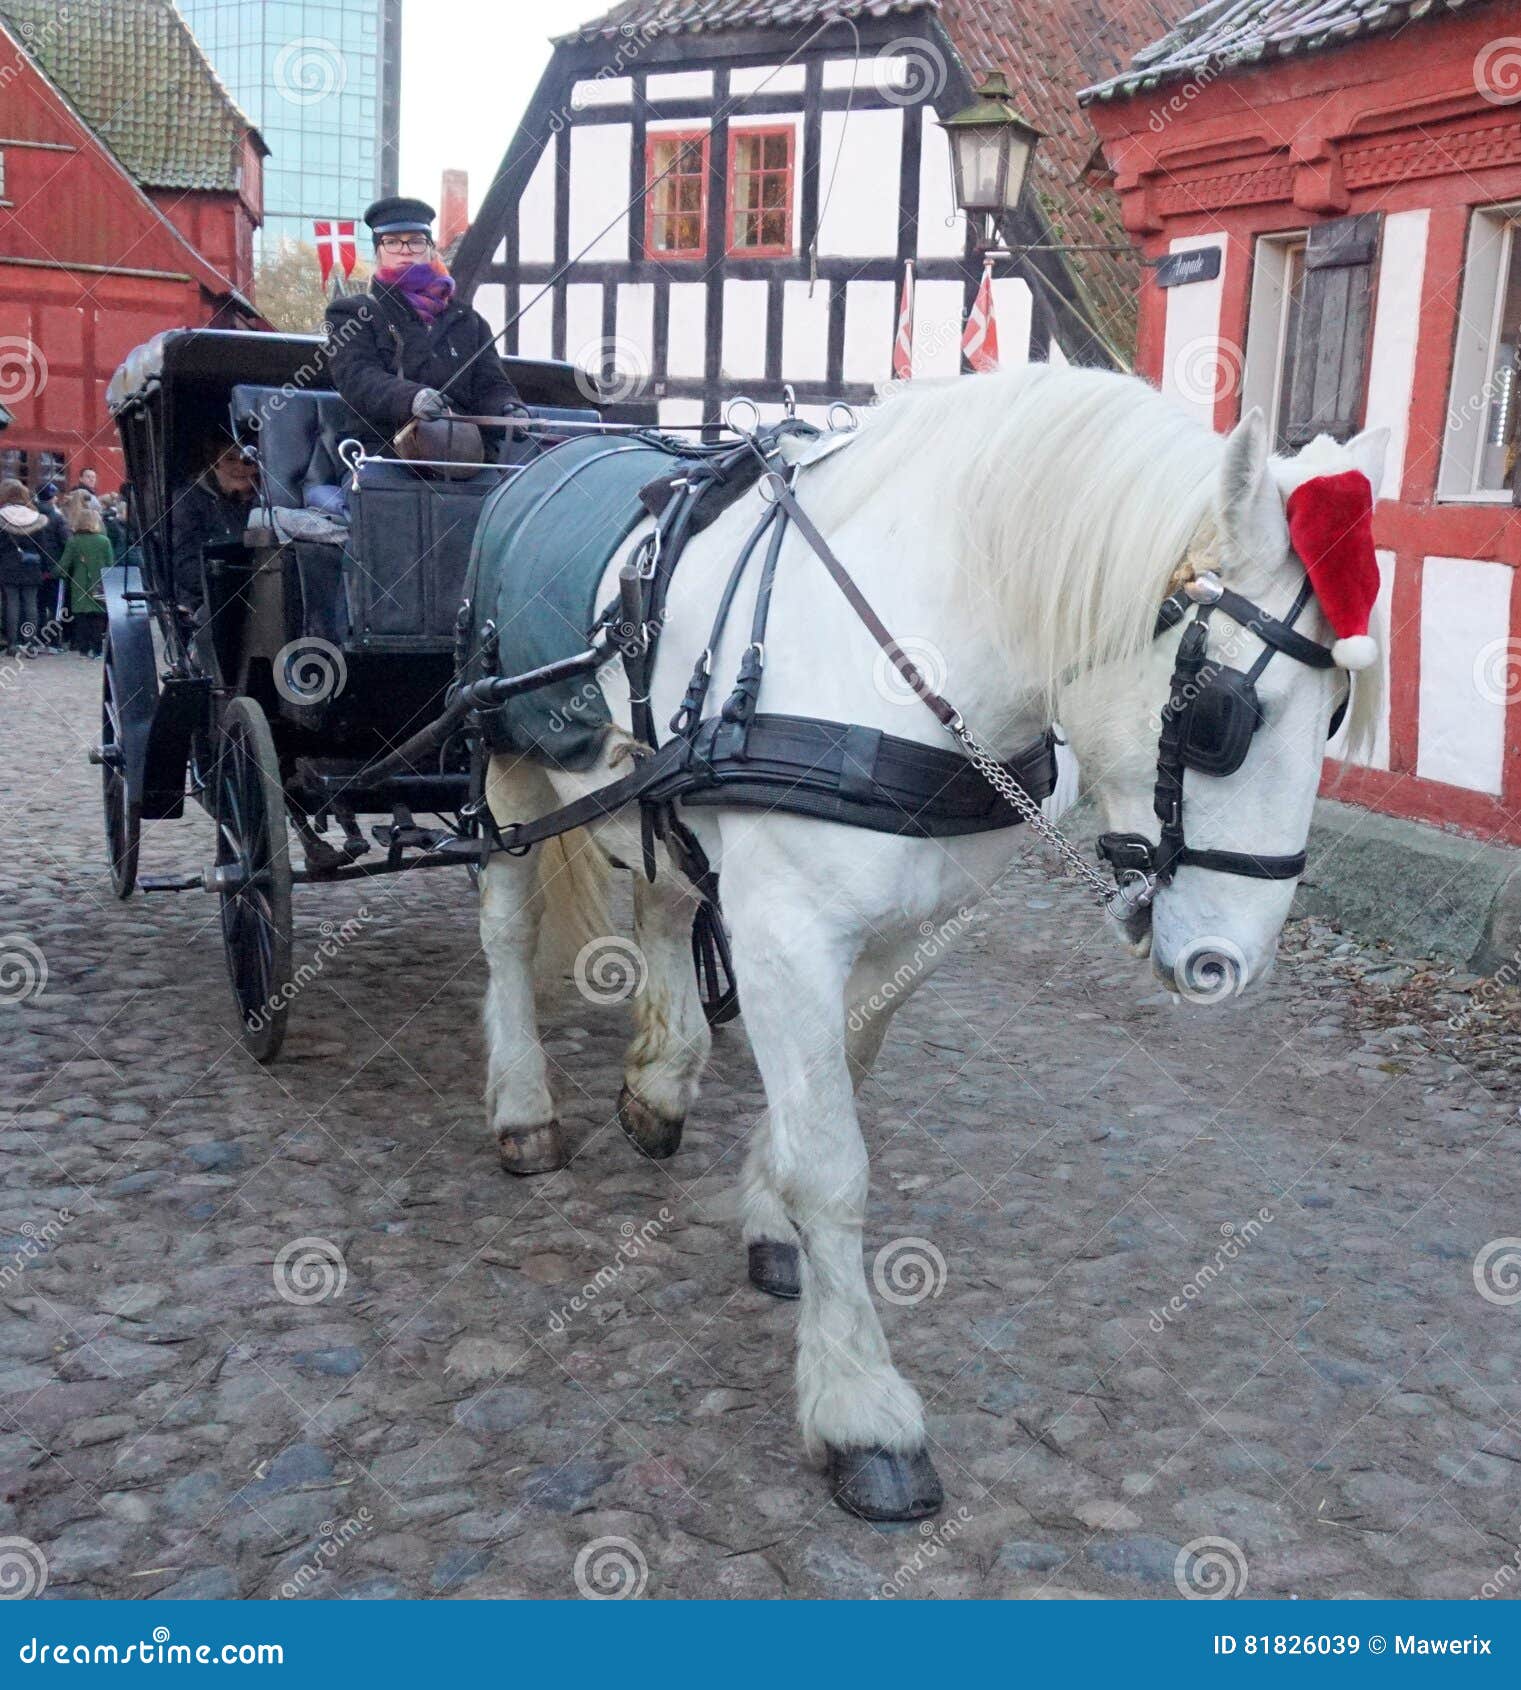 afstemning højttaler Bør White horse editorial stock image. Image of denmark, stone - 81826039